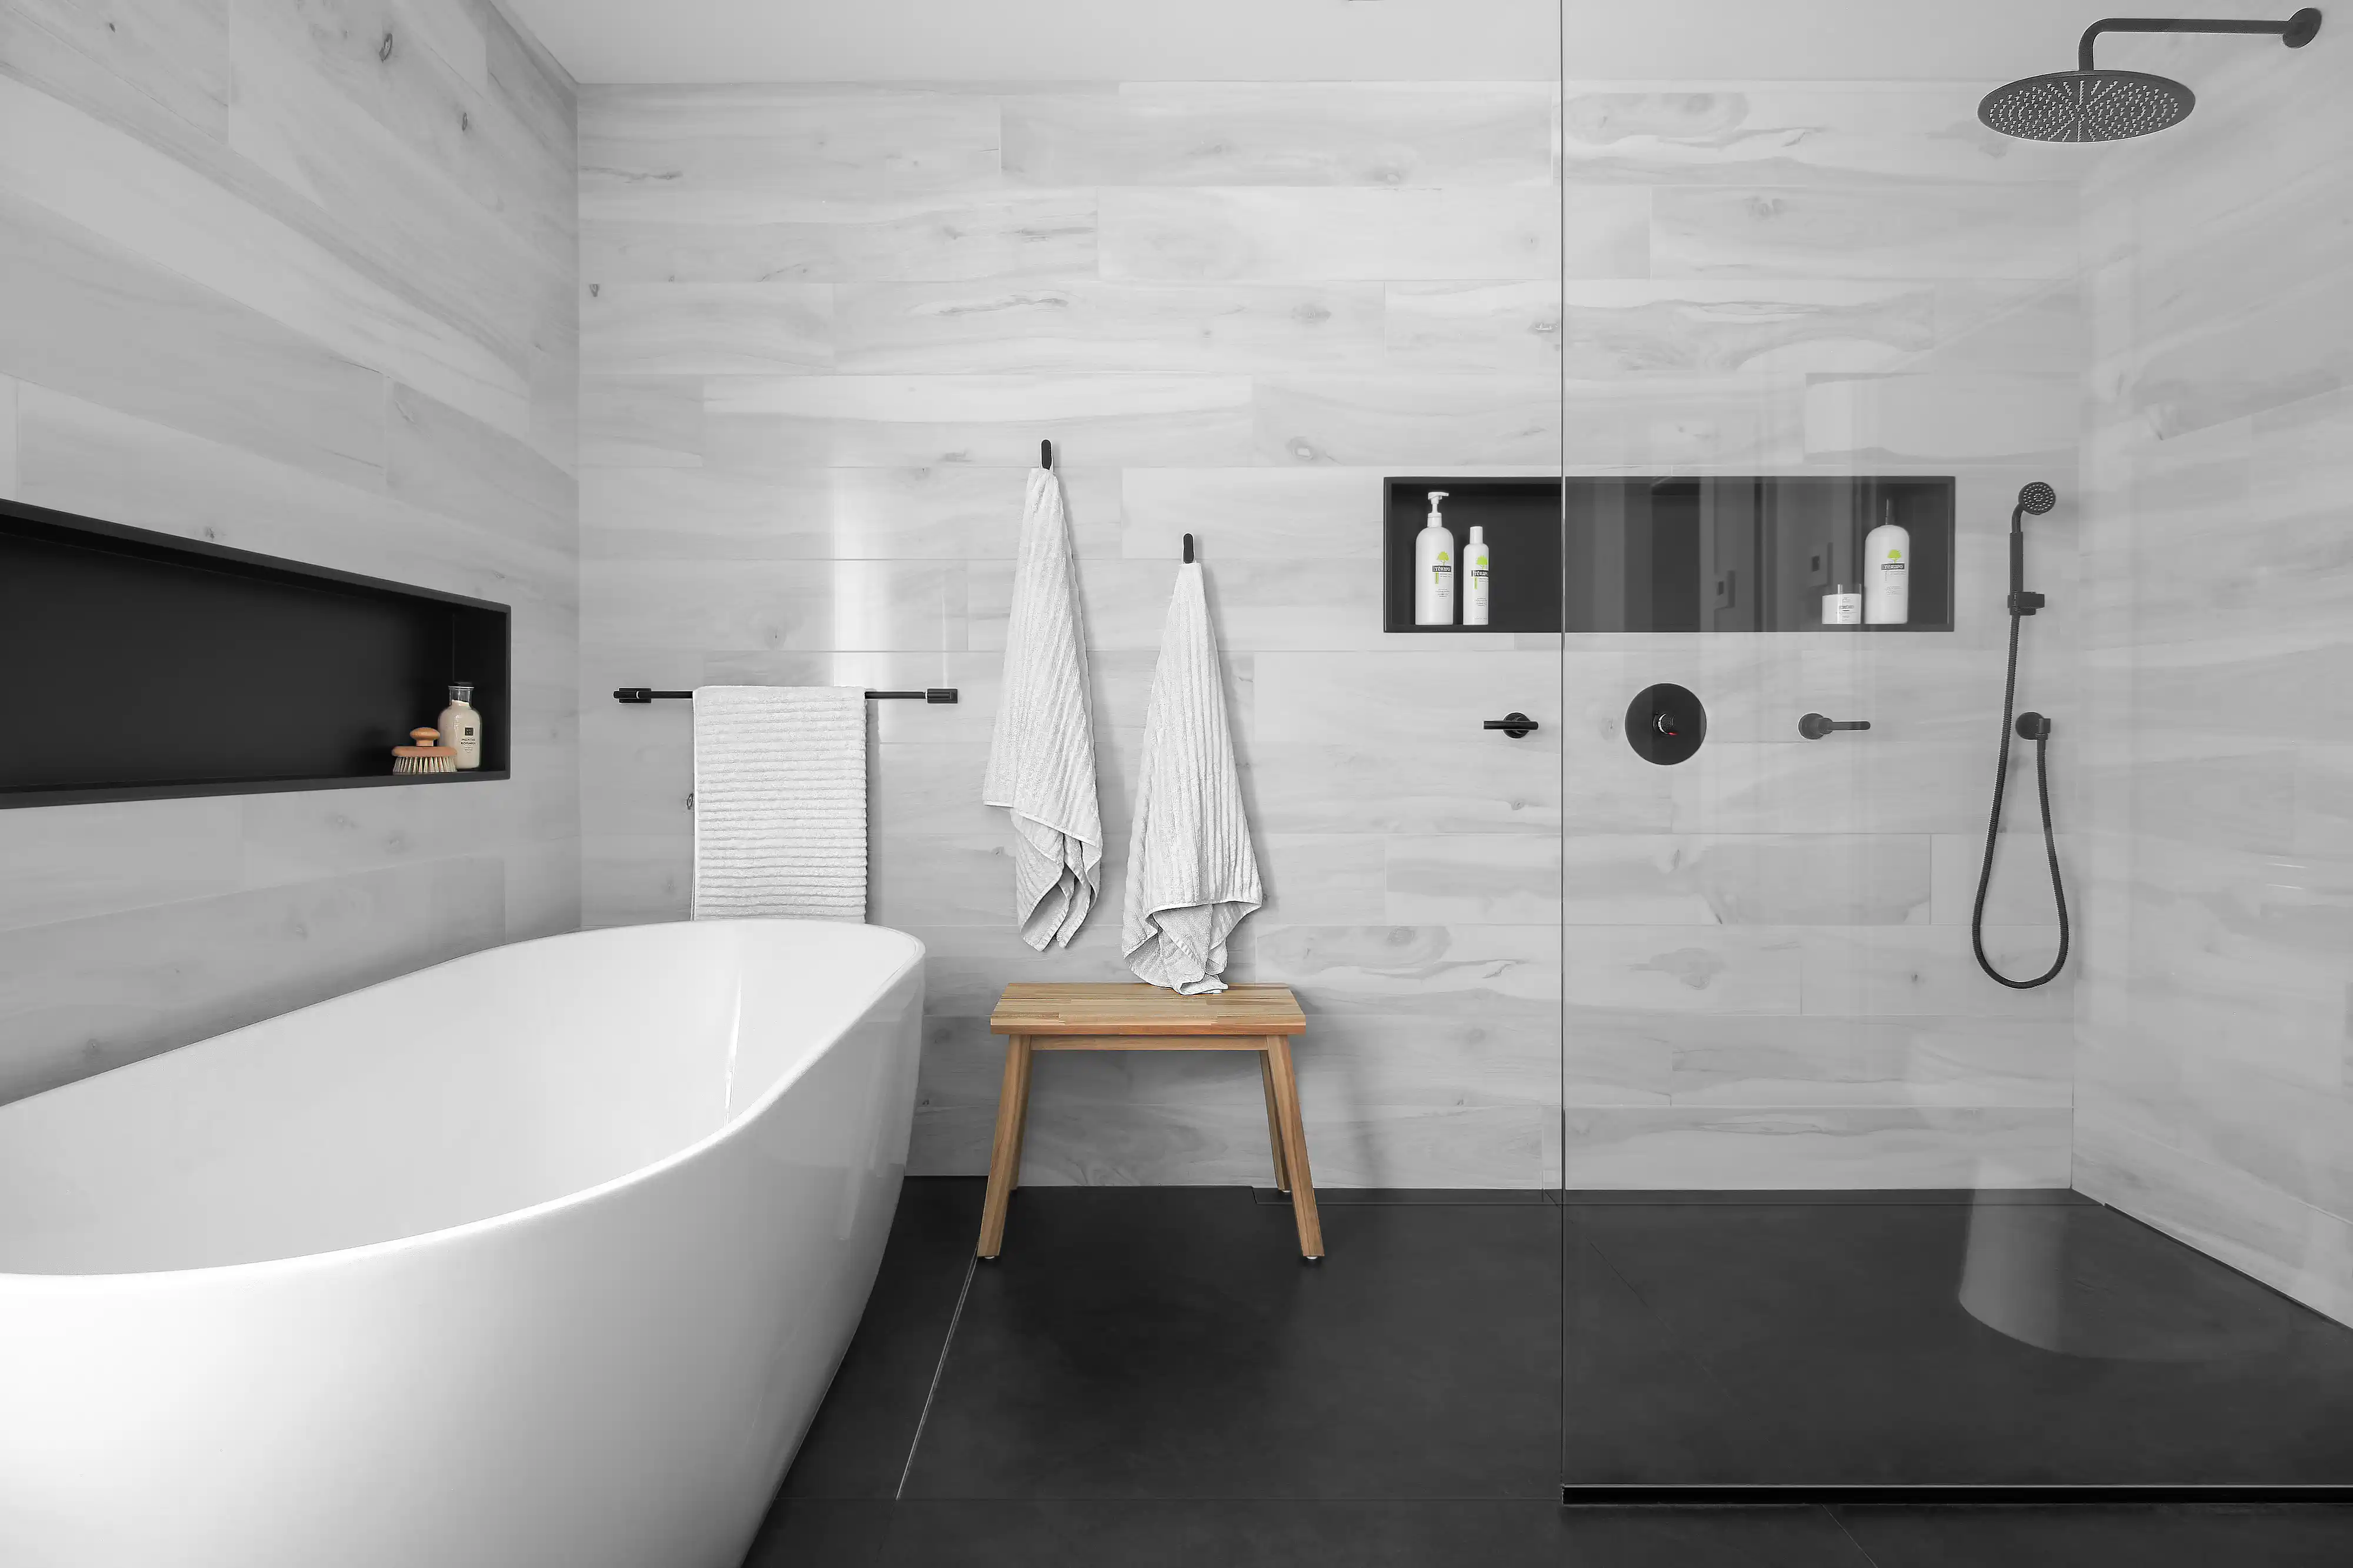 Salle de bain moderne avec un thème noir et blanc, comprenant une baignoire autoportante blanche et une douche à l'italienne, intérieur signé Sarah Brown Design